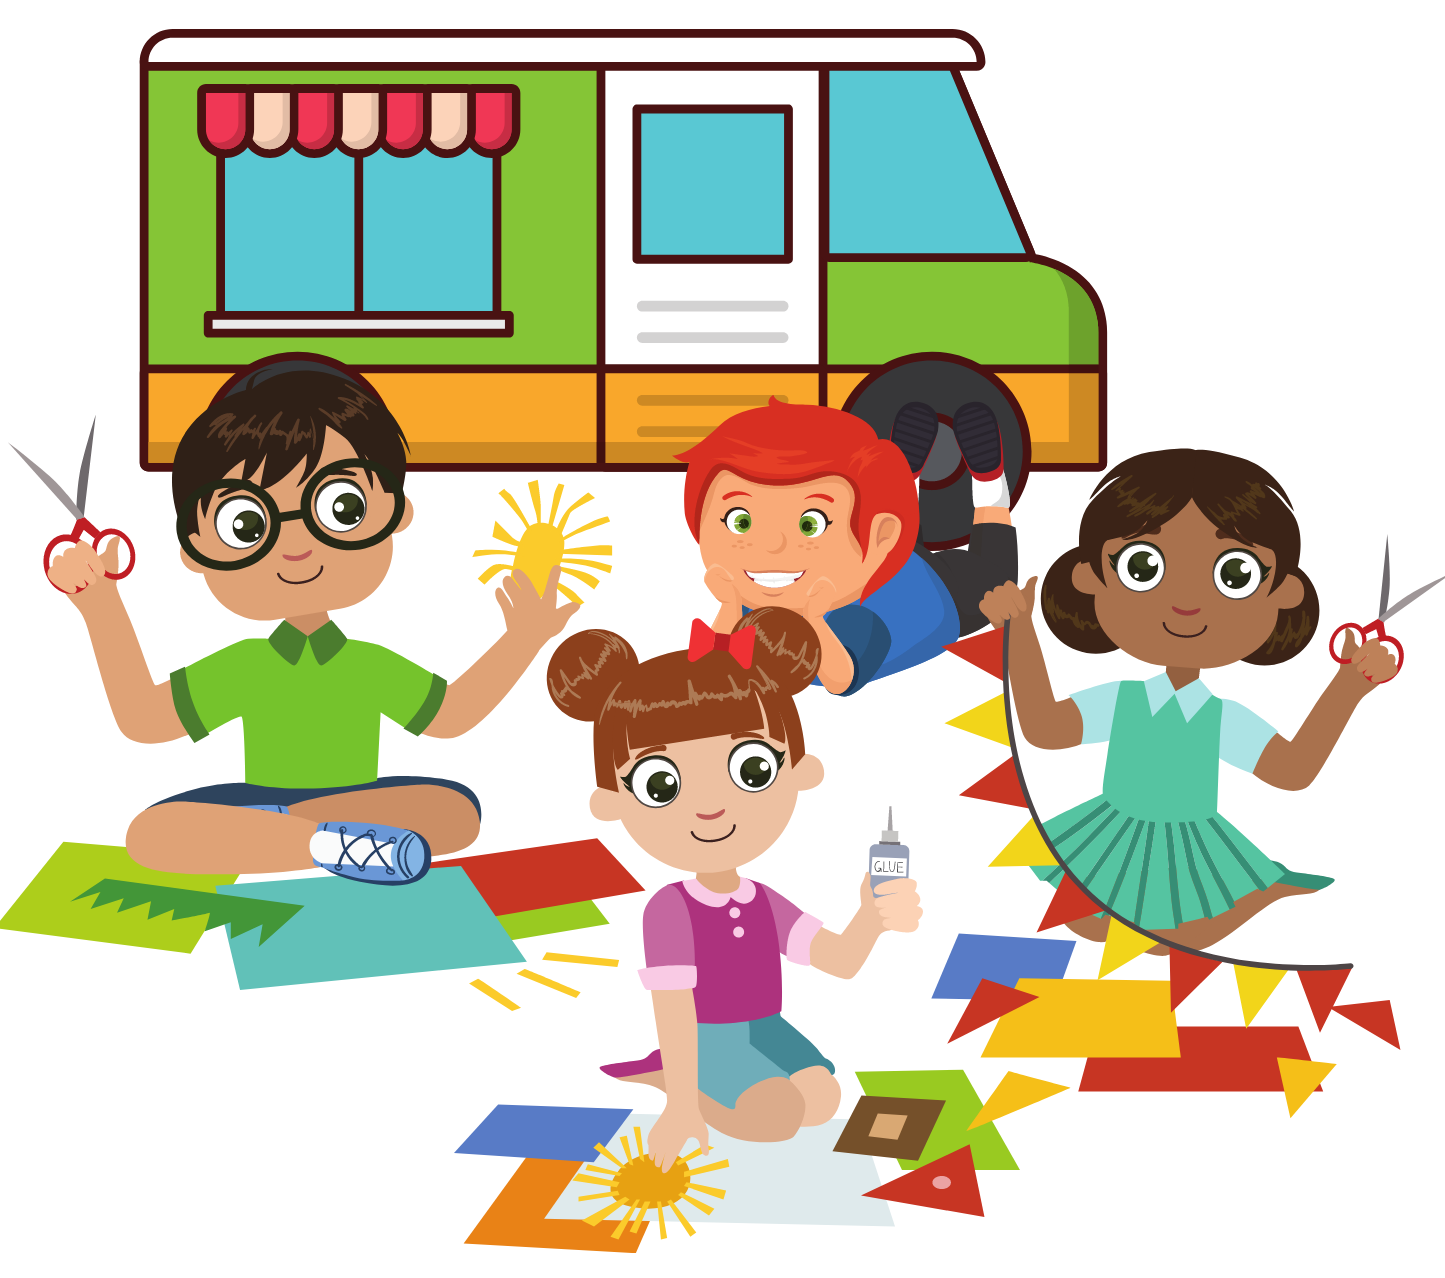 En la imagen aparece un grupo de 4 niños y niñas que están construyendo un food truck, trabajando en equipo